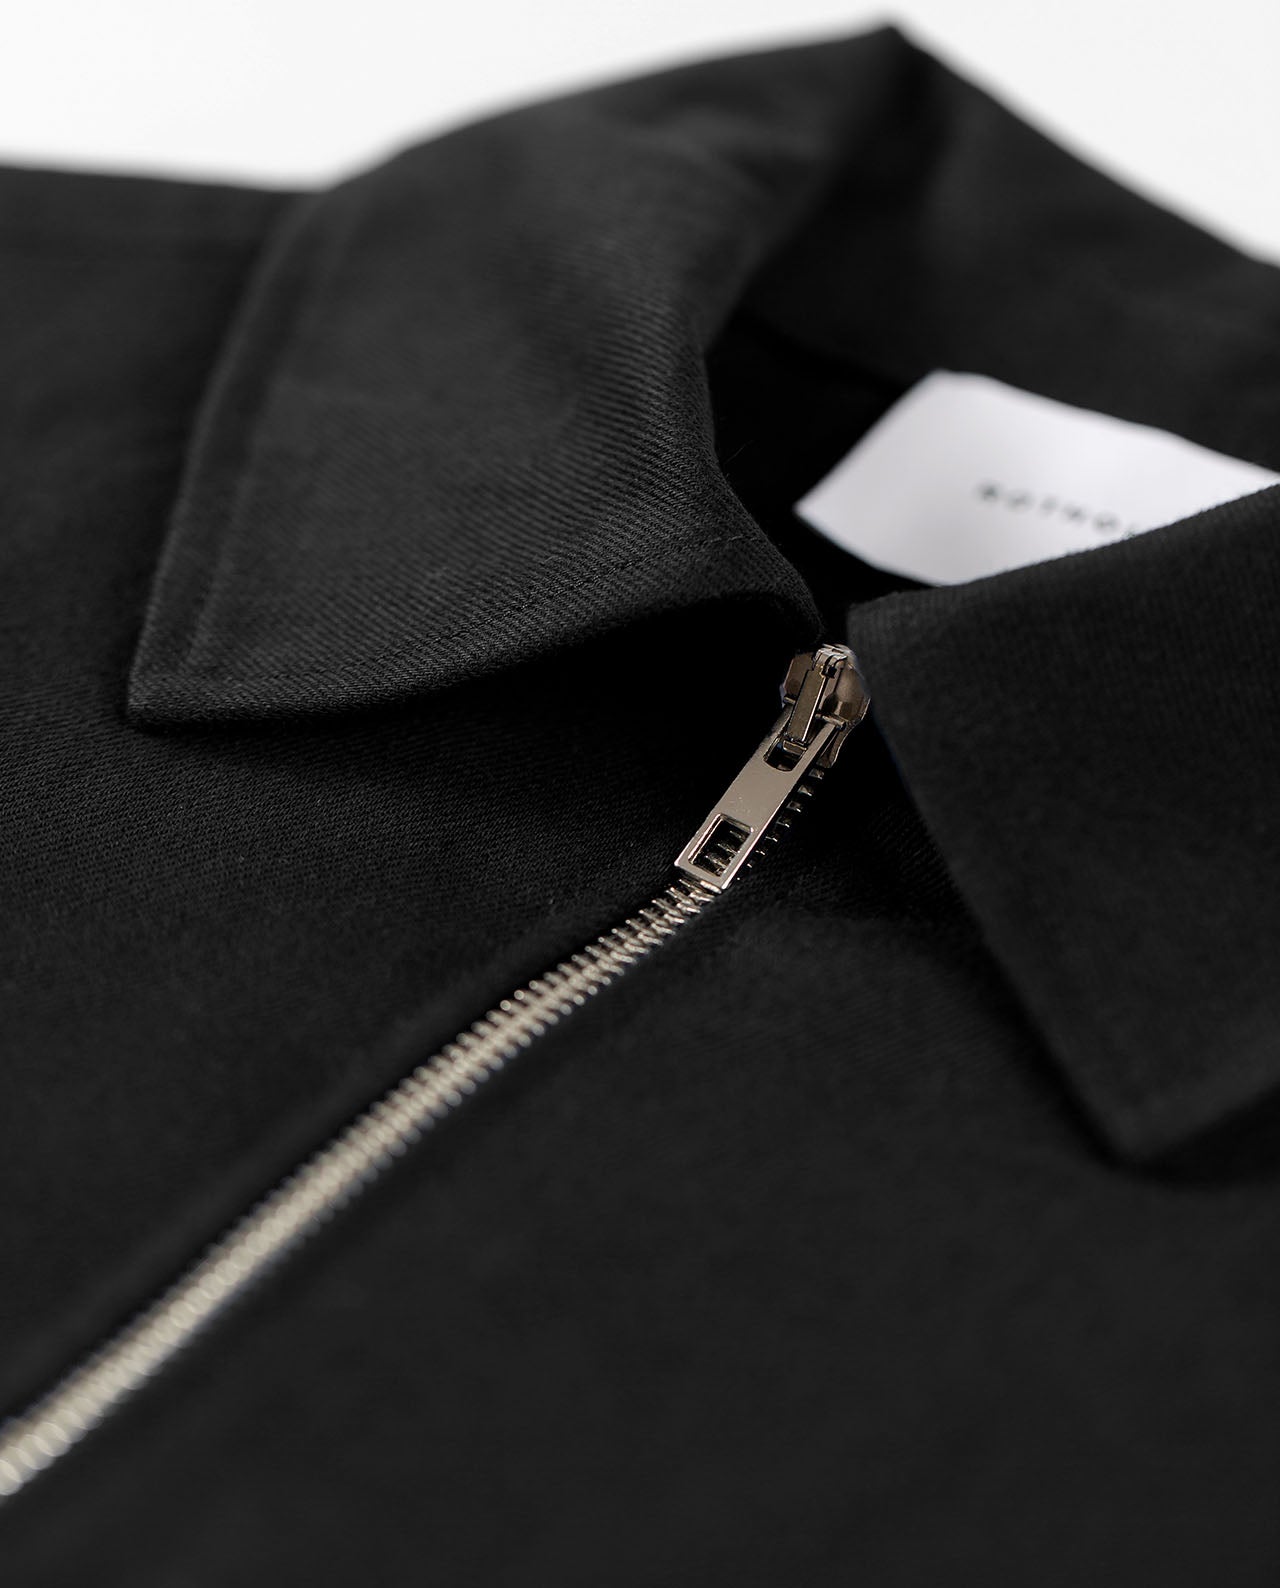 marché commun rotholz veste homme coton biologique noire éthique zippée